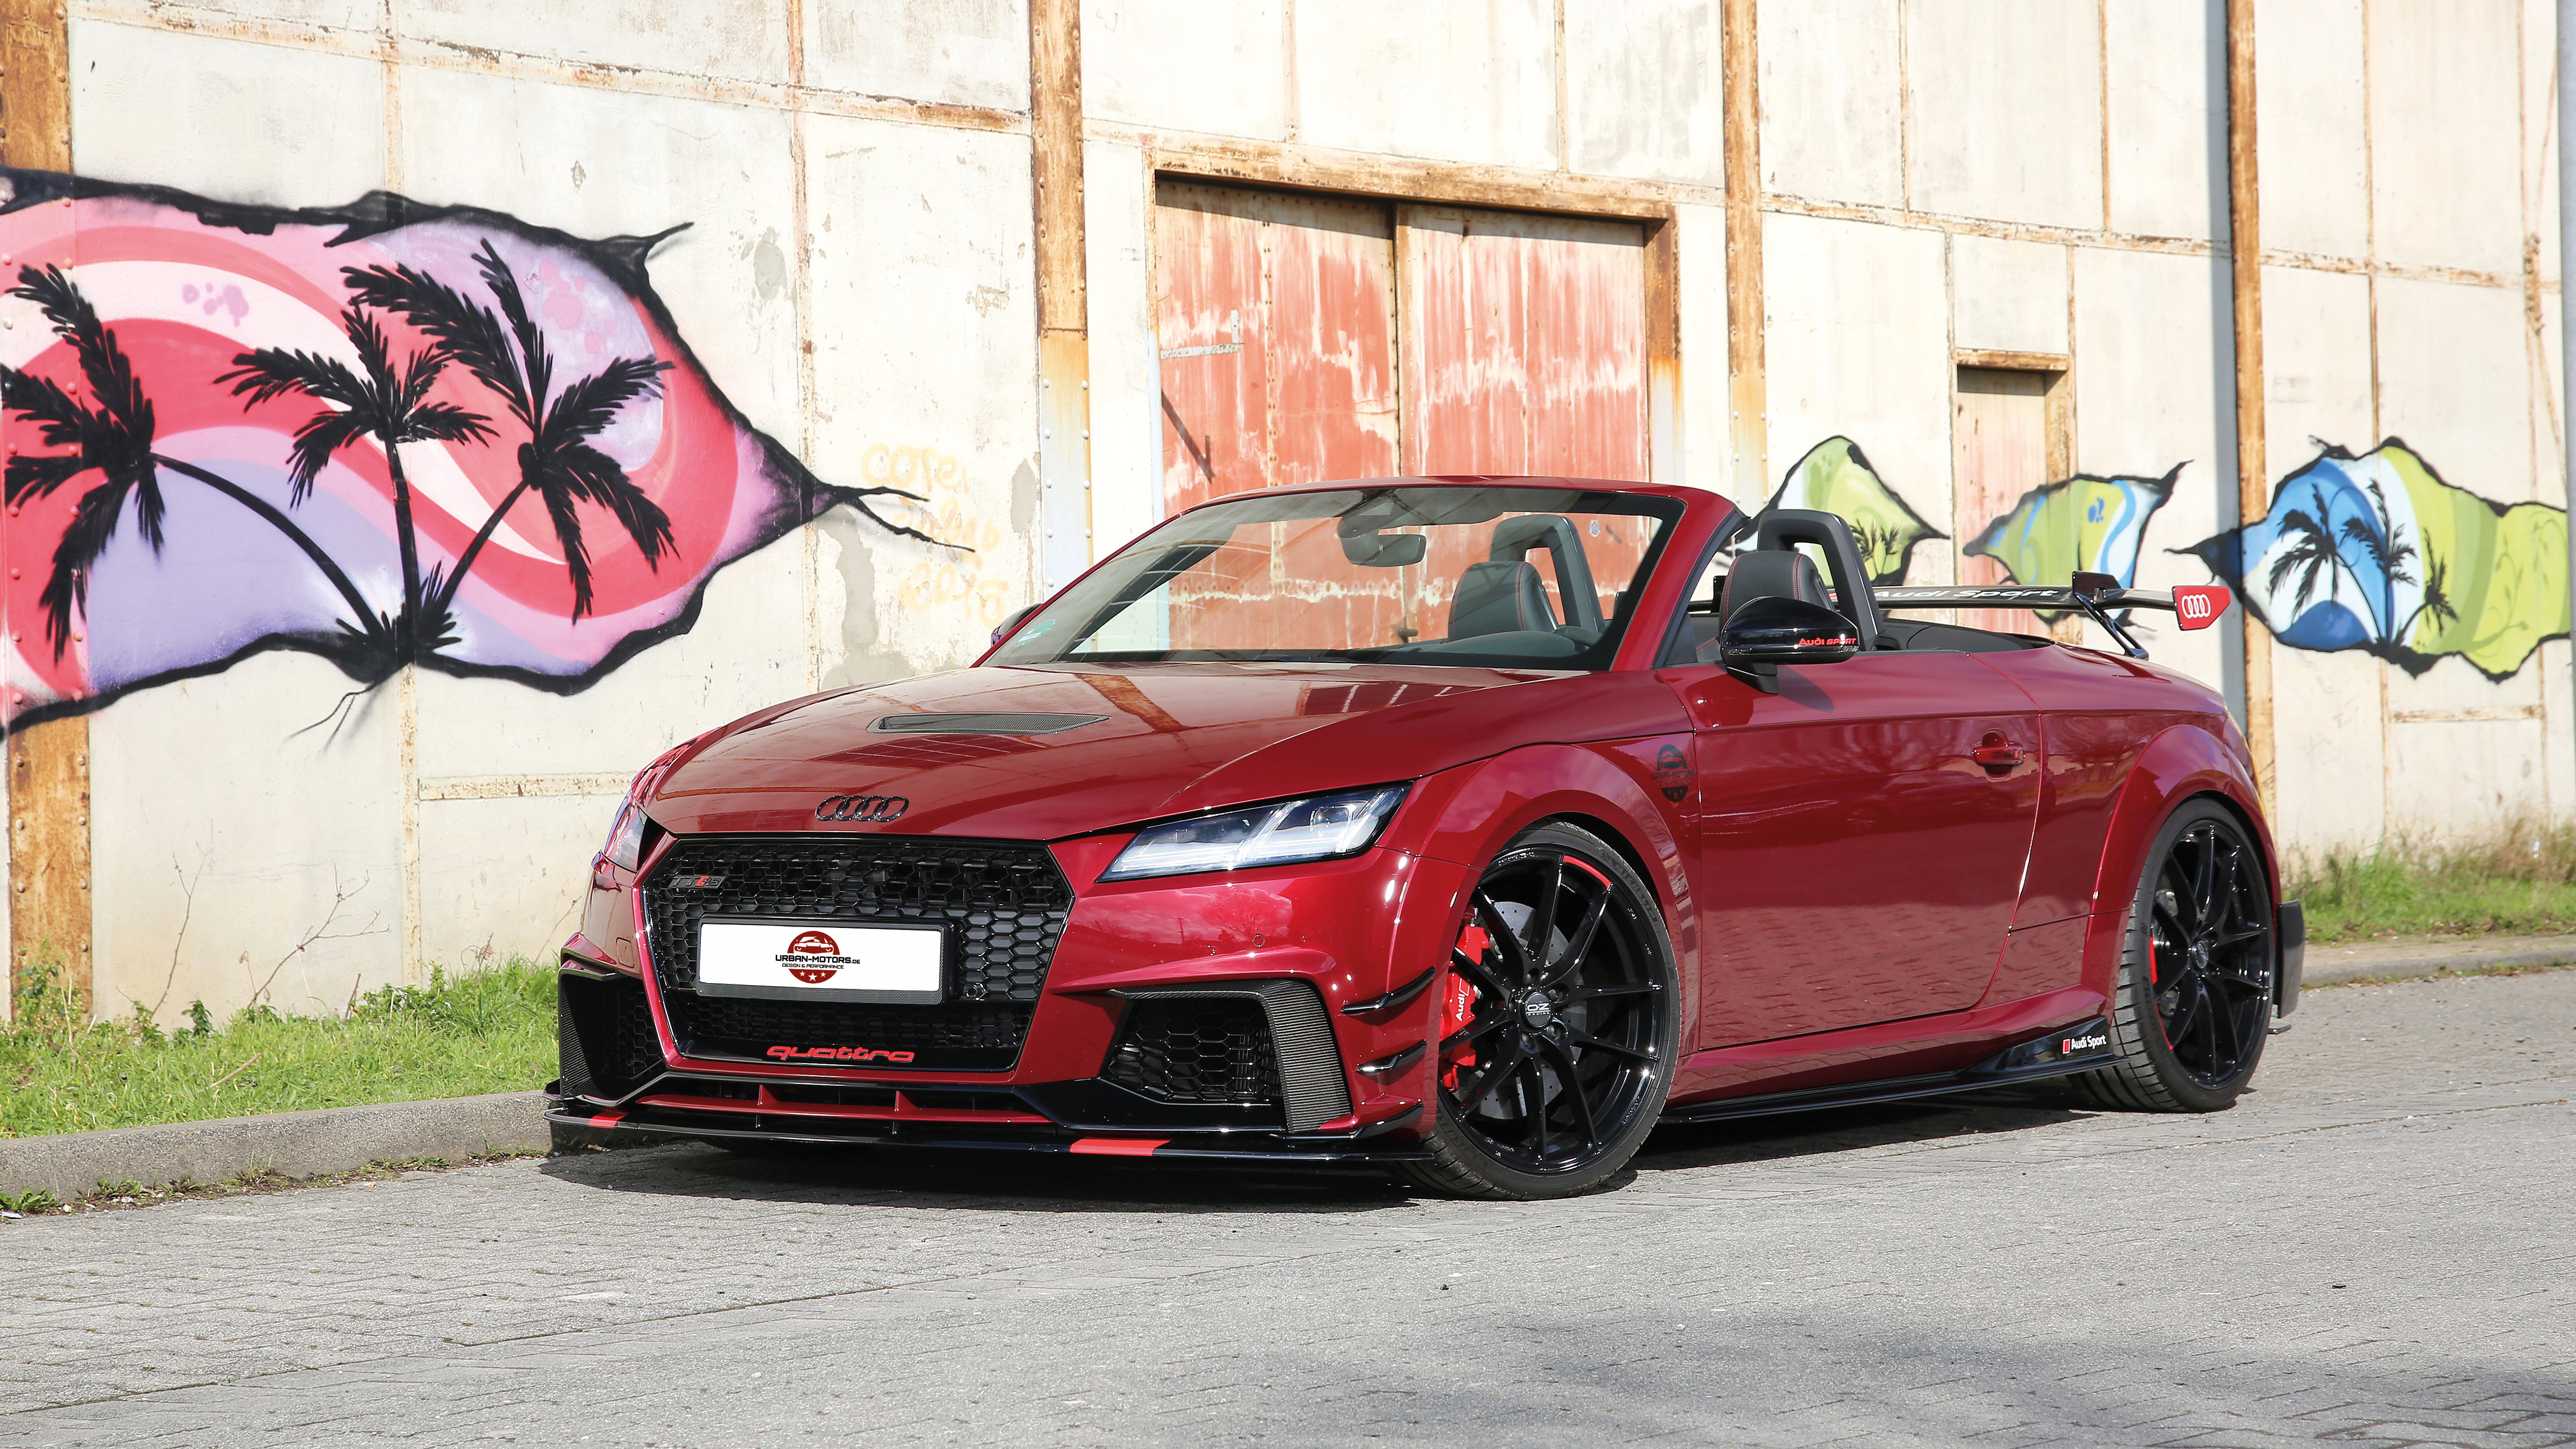 Audi Urban Wallpapers